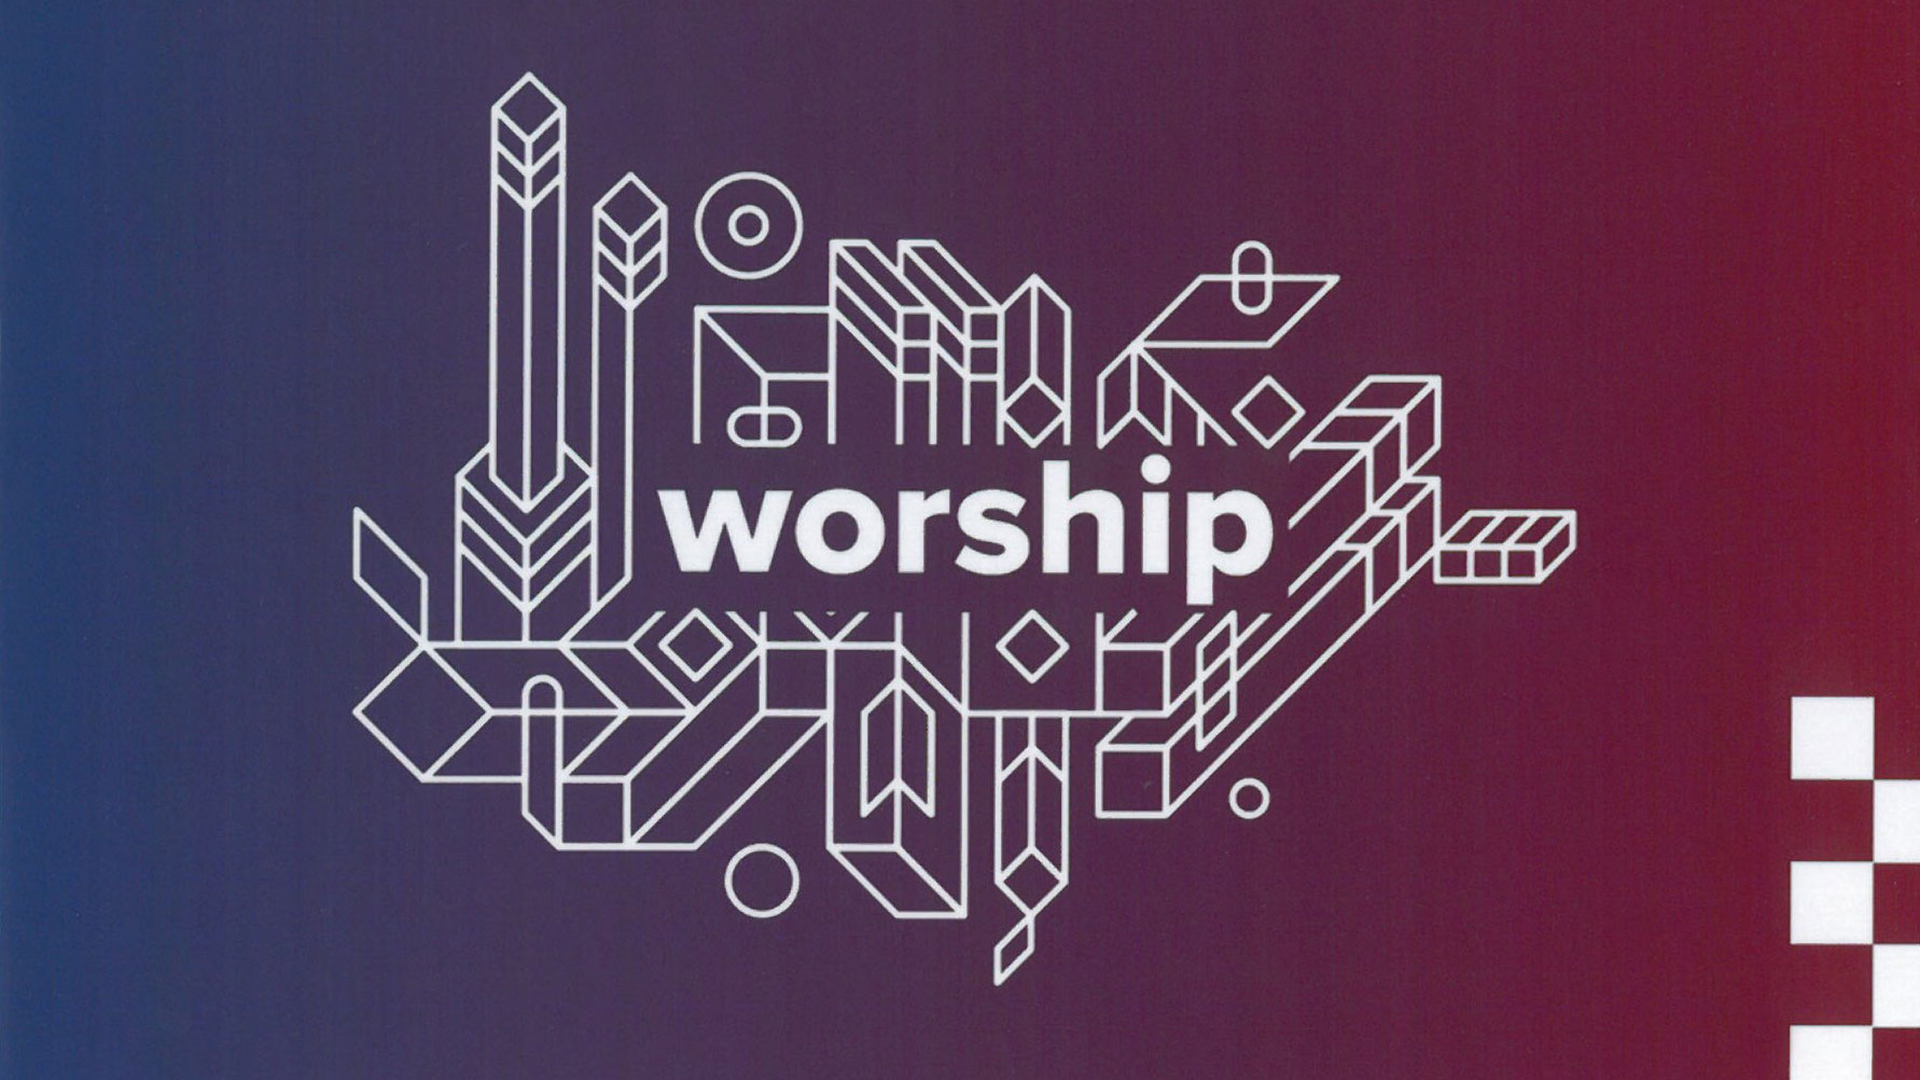 Series: Worship and Prayor Night